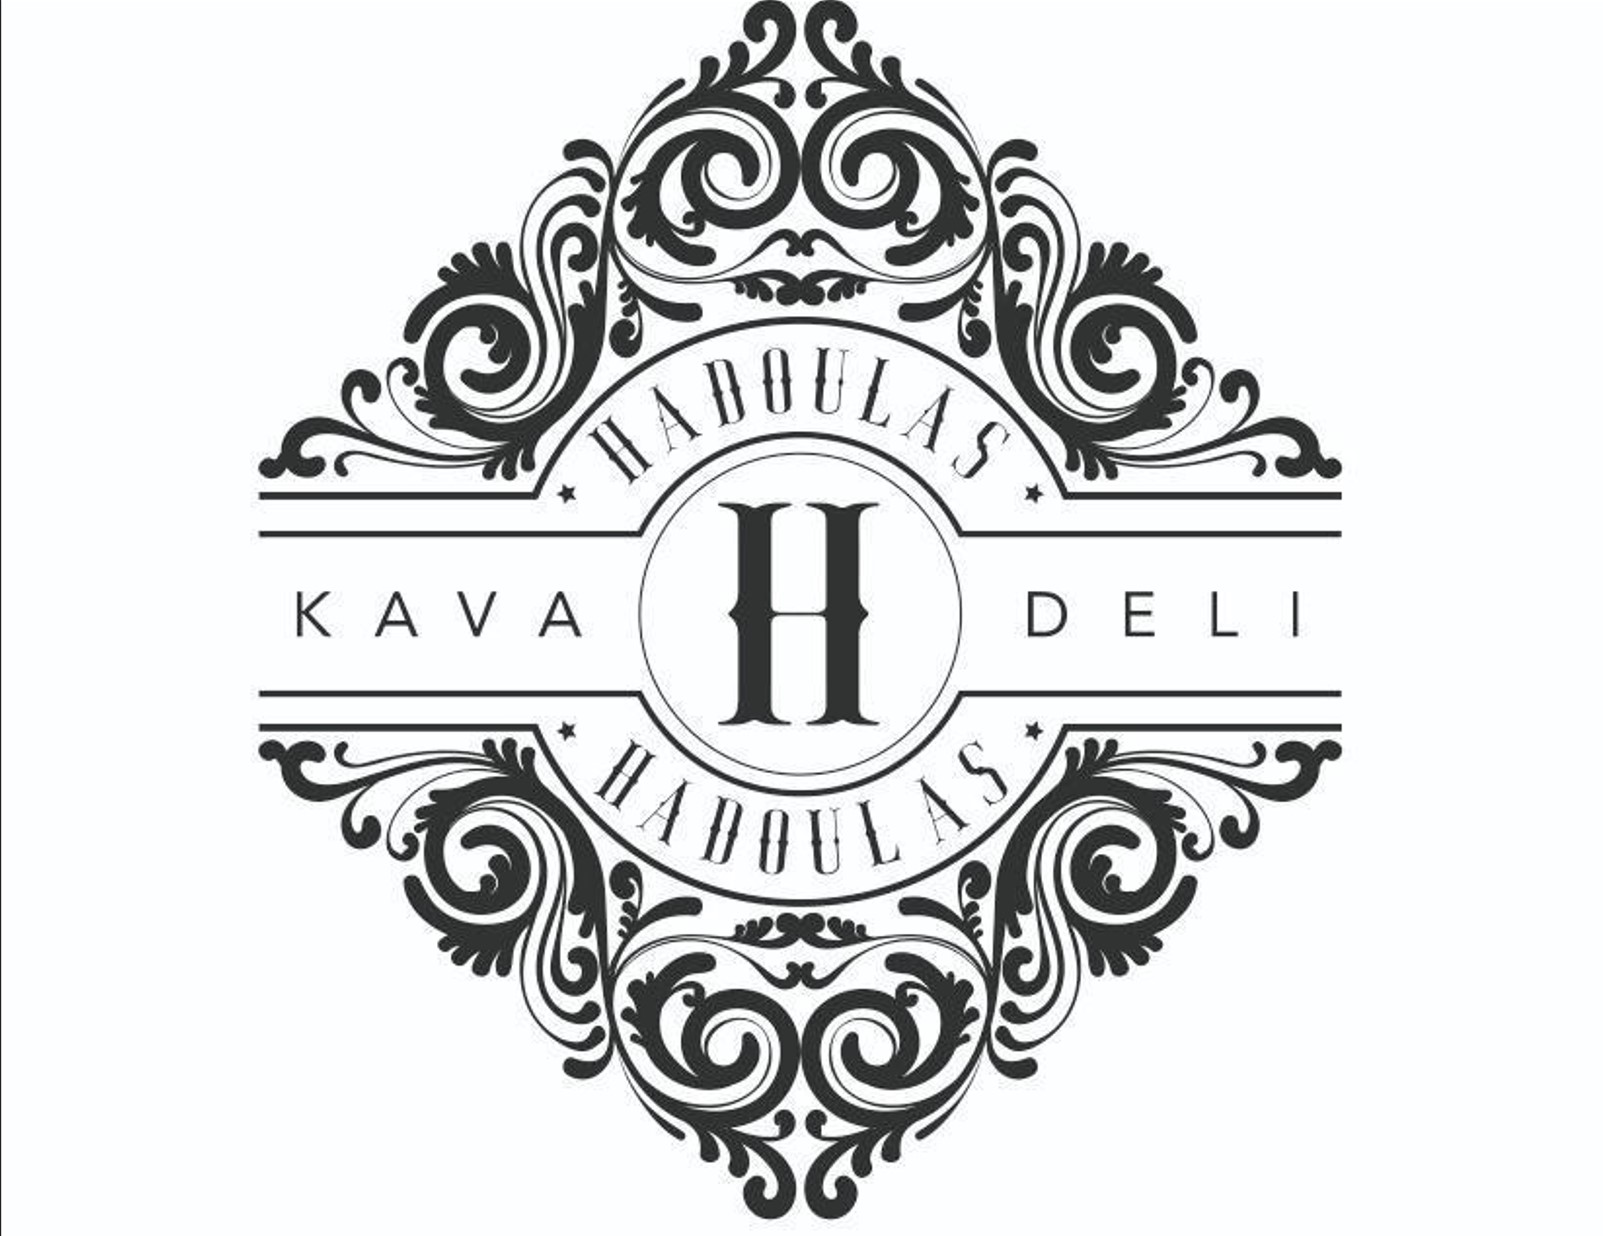 Hadoulas Kava - Deli